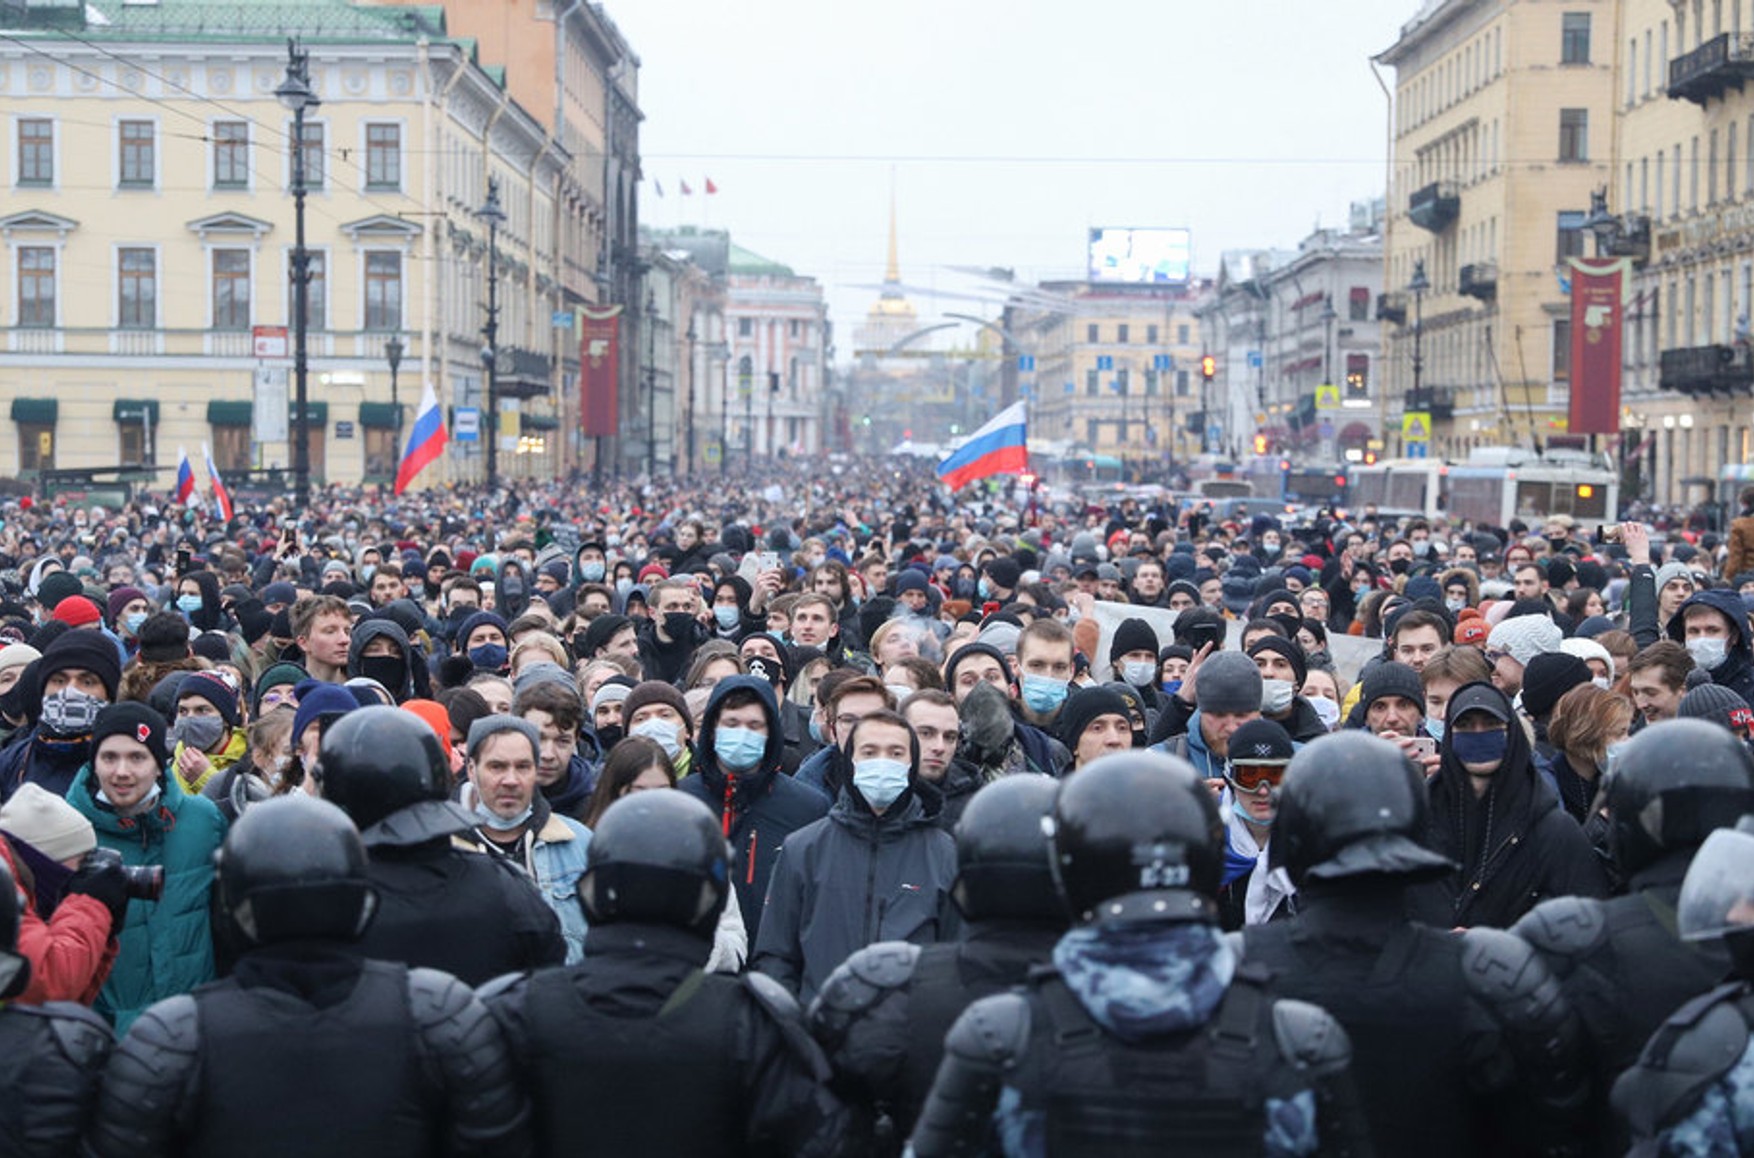 80% росіян чули про акції на підтримку Навального. Більше половини з них відносяться до них або позитивно, або нейтрально